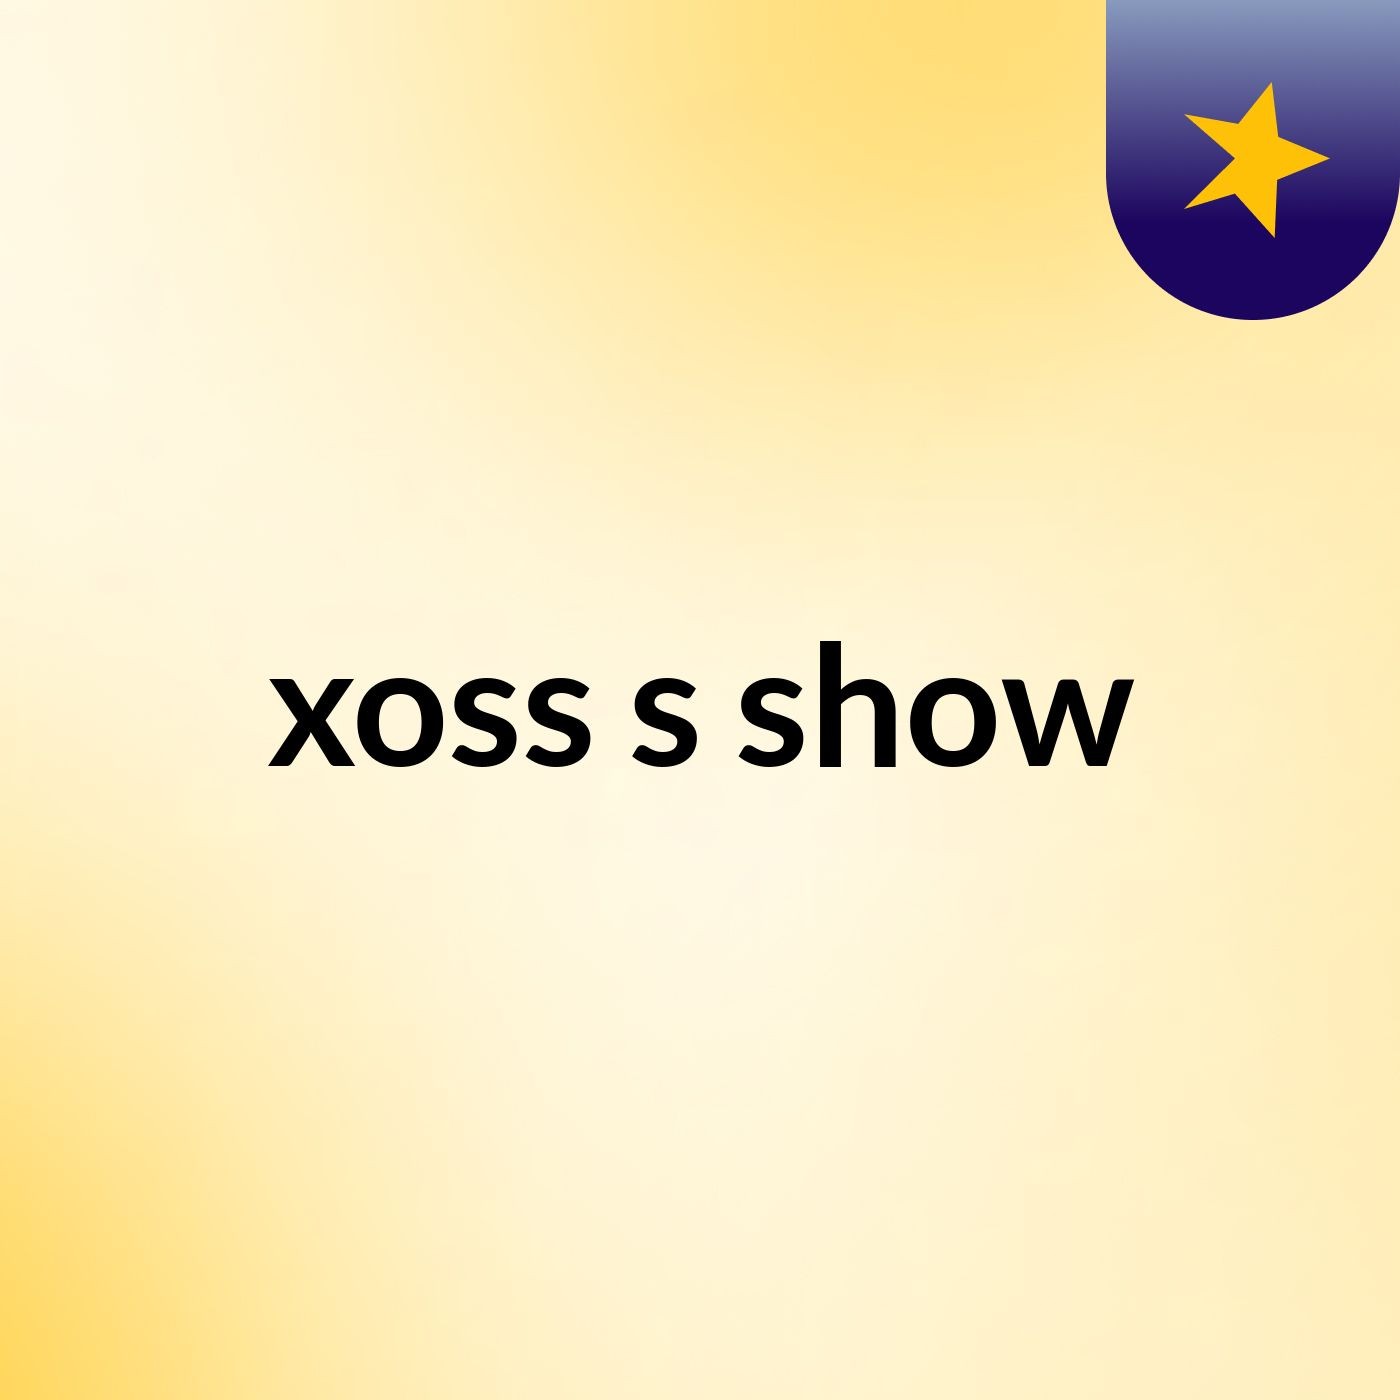 xoss's show